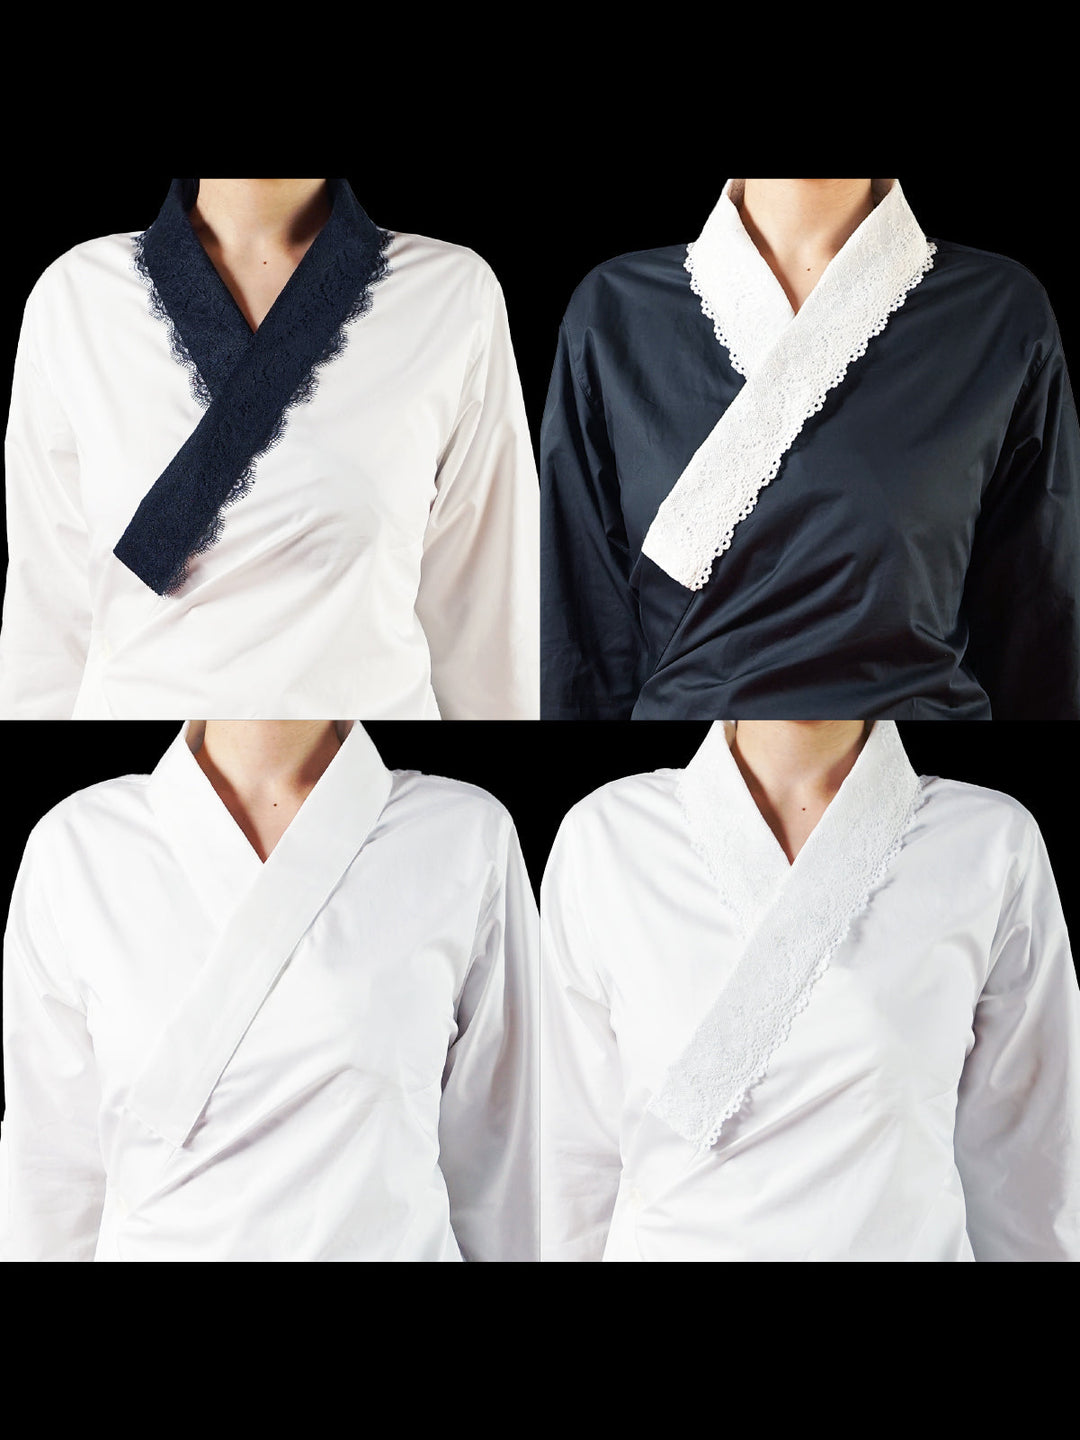  [数量限定受注会]Samurai Mode Juban Shirt